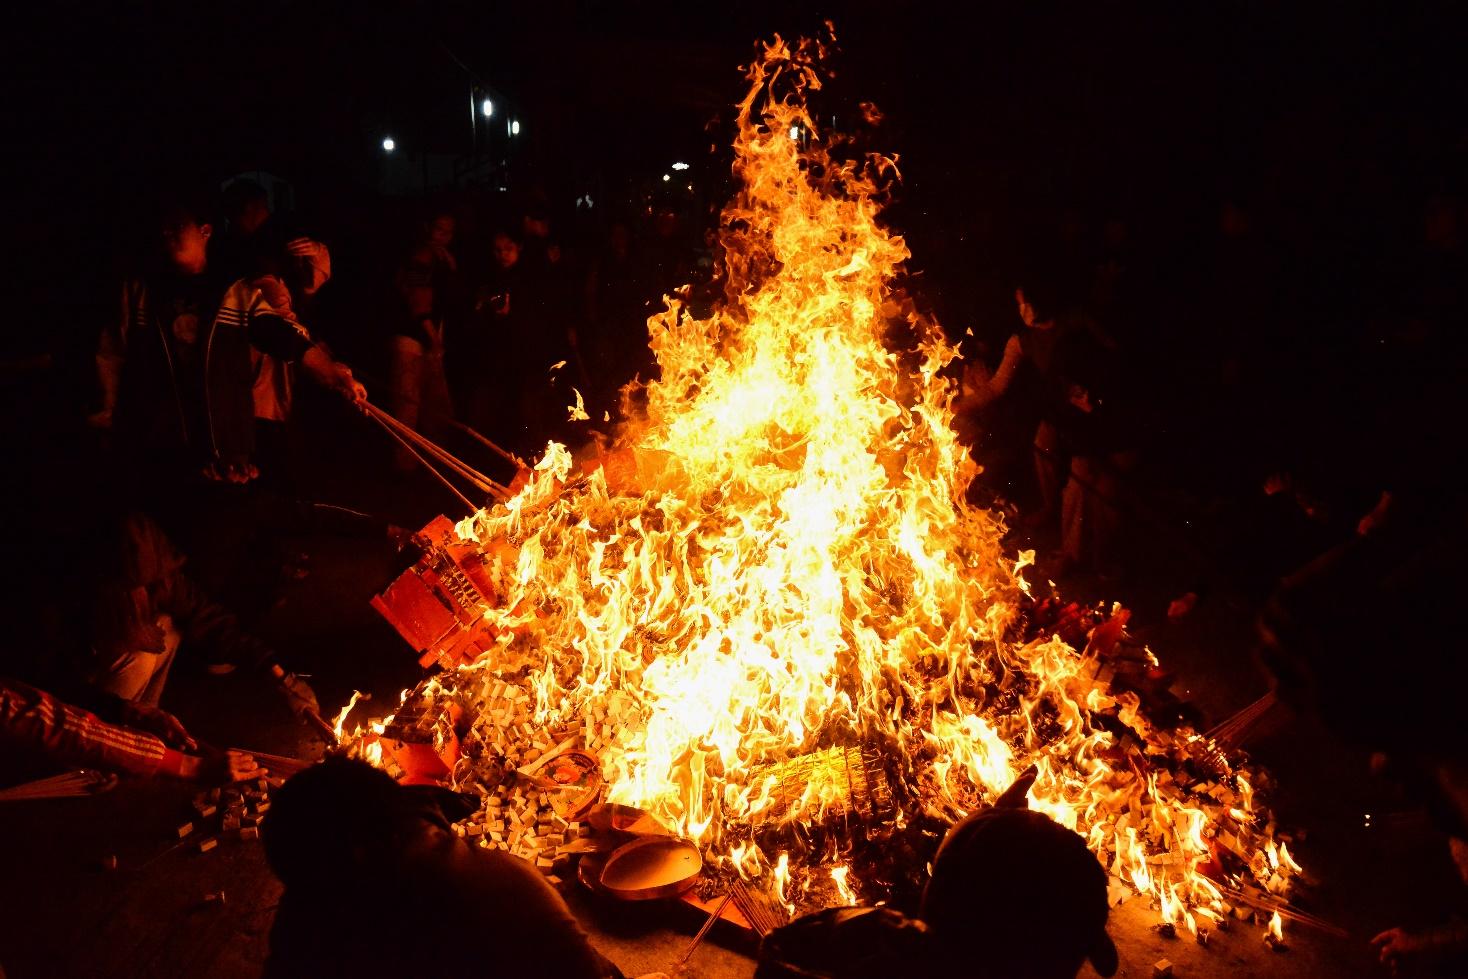 Người dân háo hức xin lửa lấy đỏ, mong mọi điều may trong năm mới - Ảnh 9.